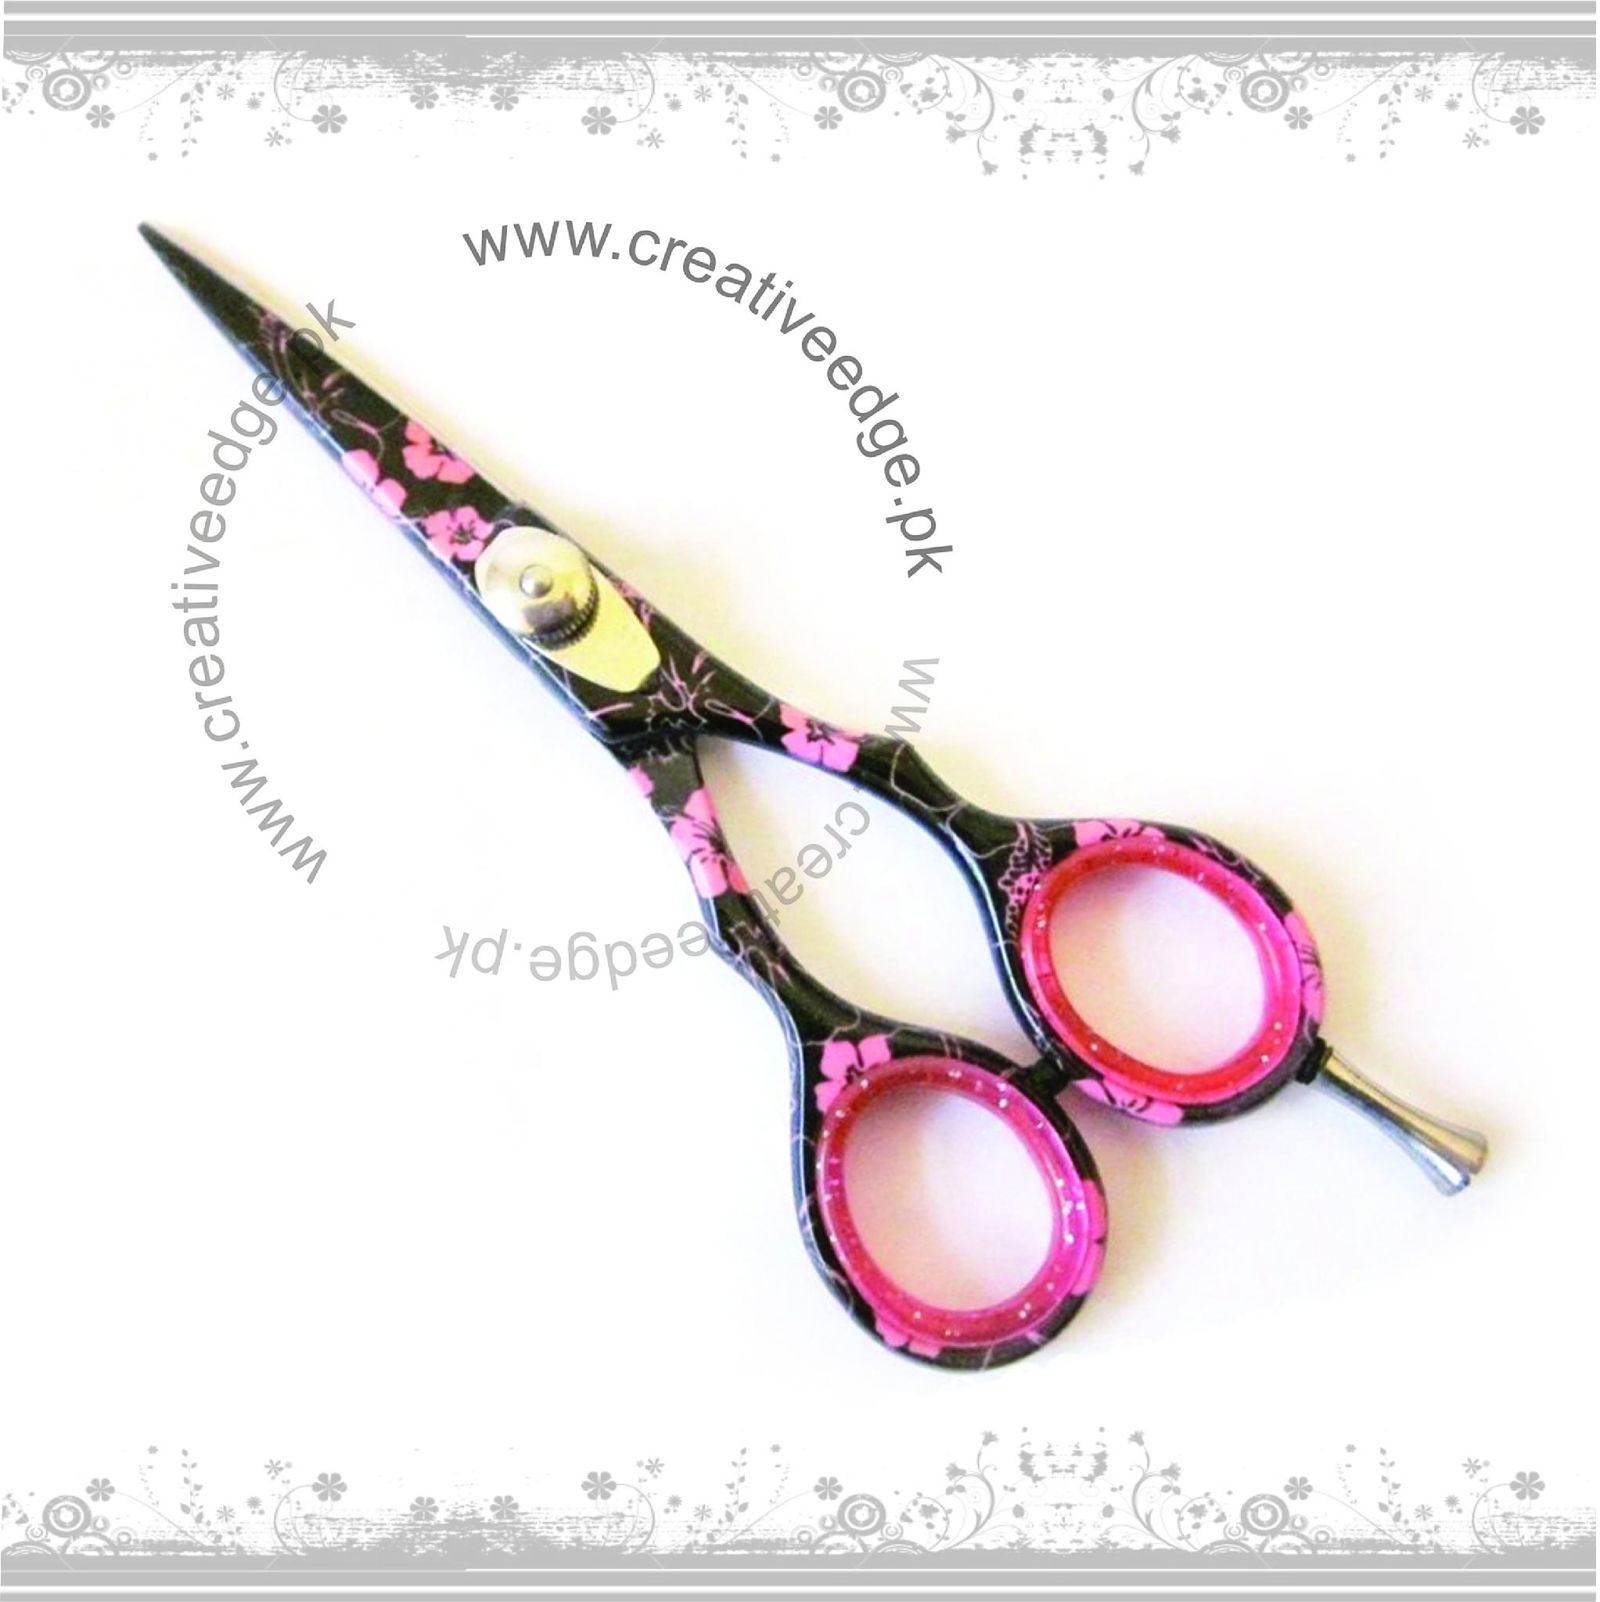 Barber scissor Pink flower coating